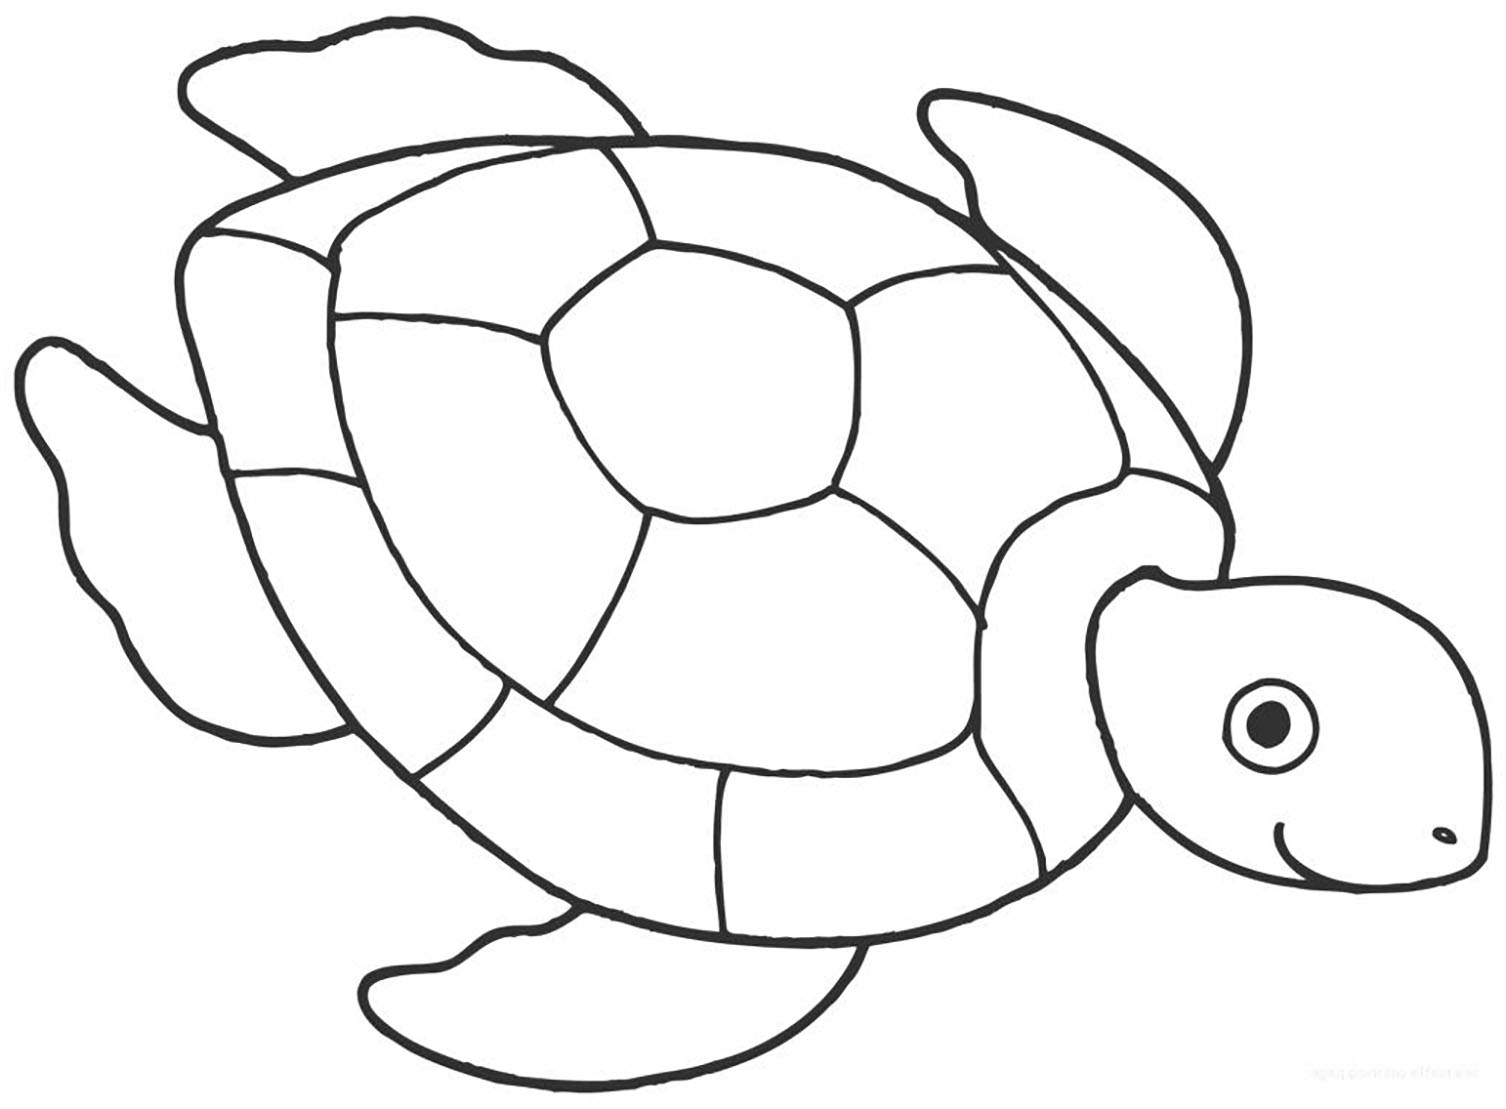 Dessin de tortue à colorier, facile pour enfants